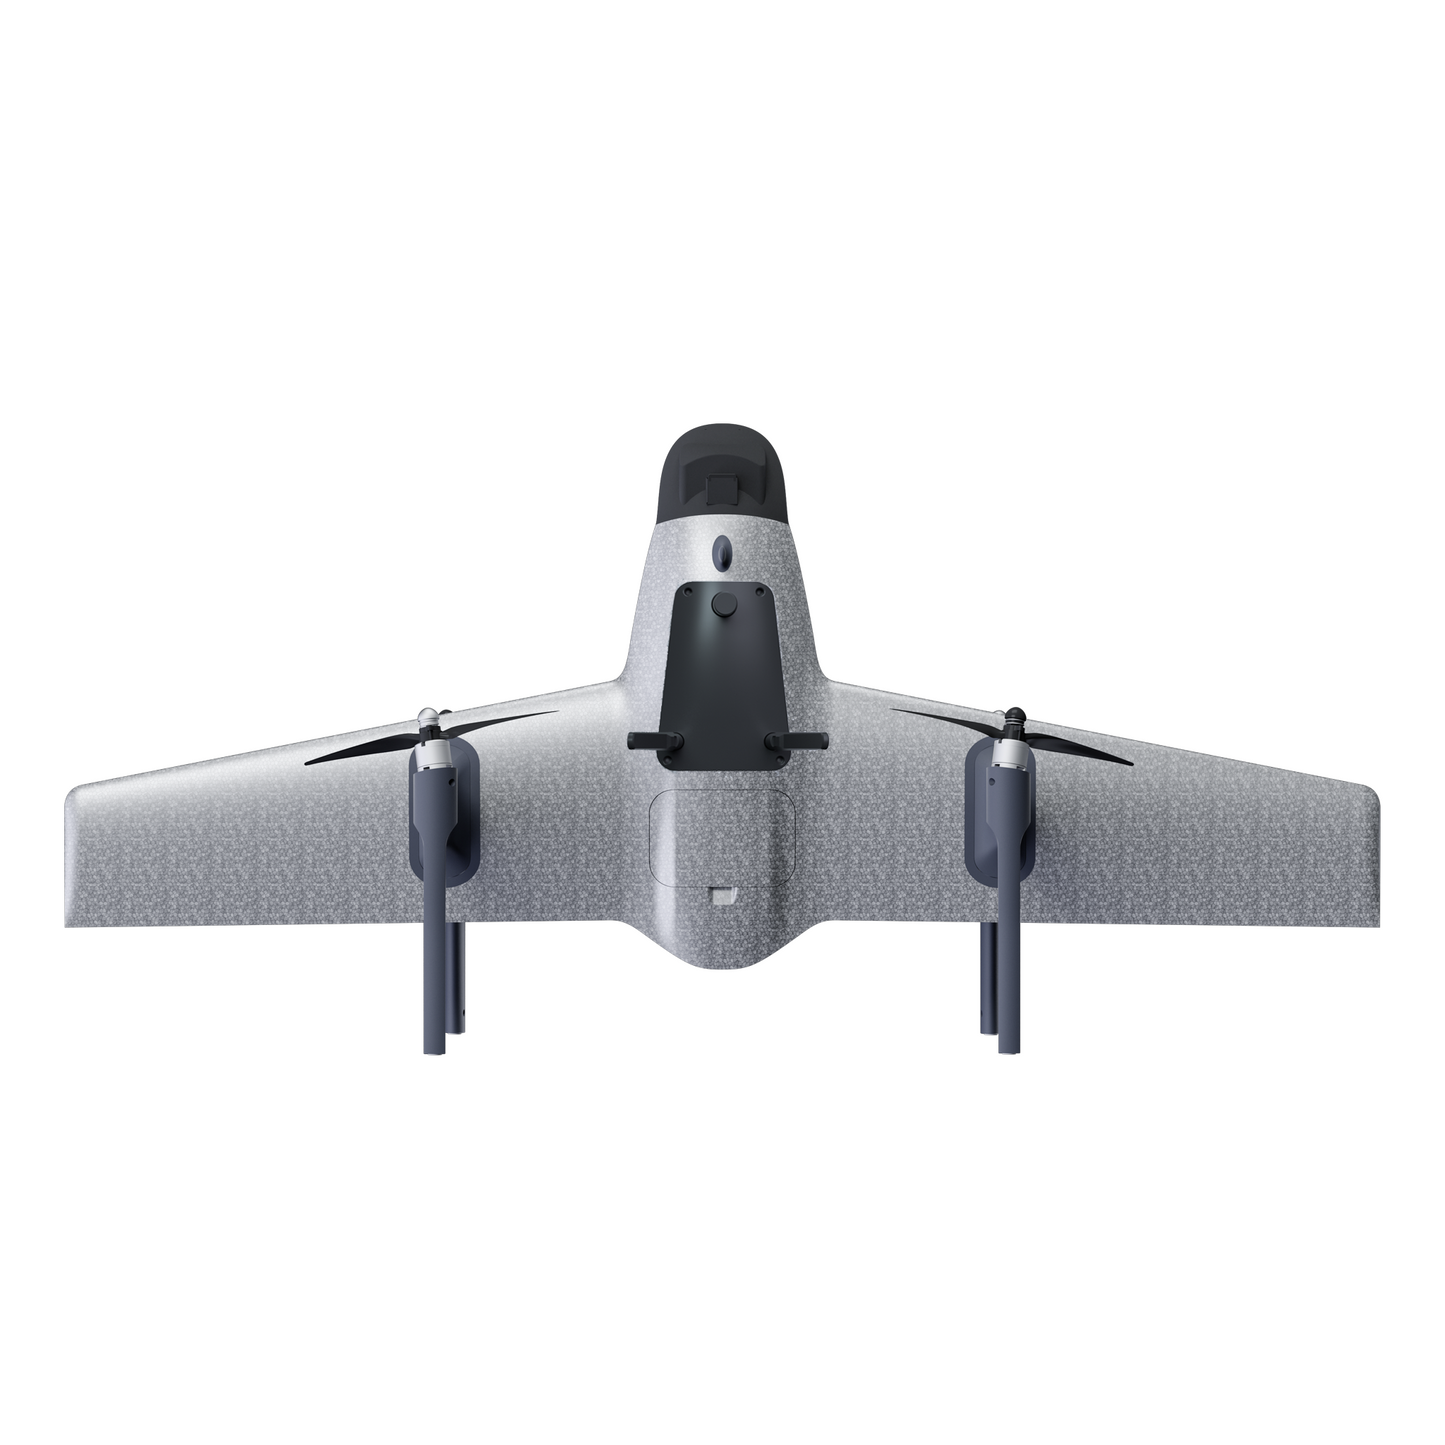 long-range laser rangefinder drone